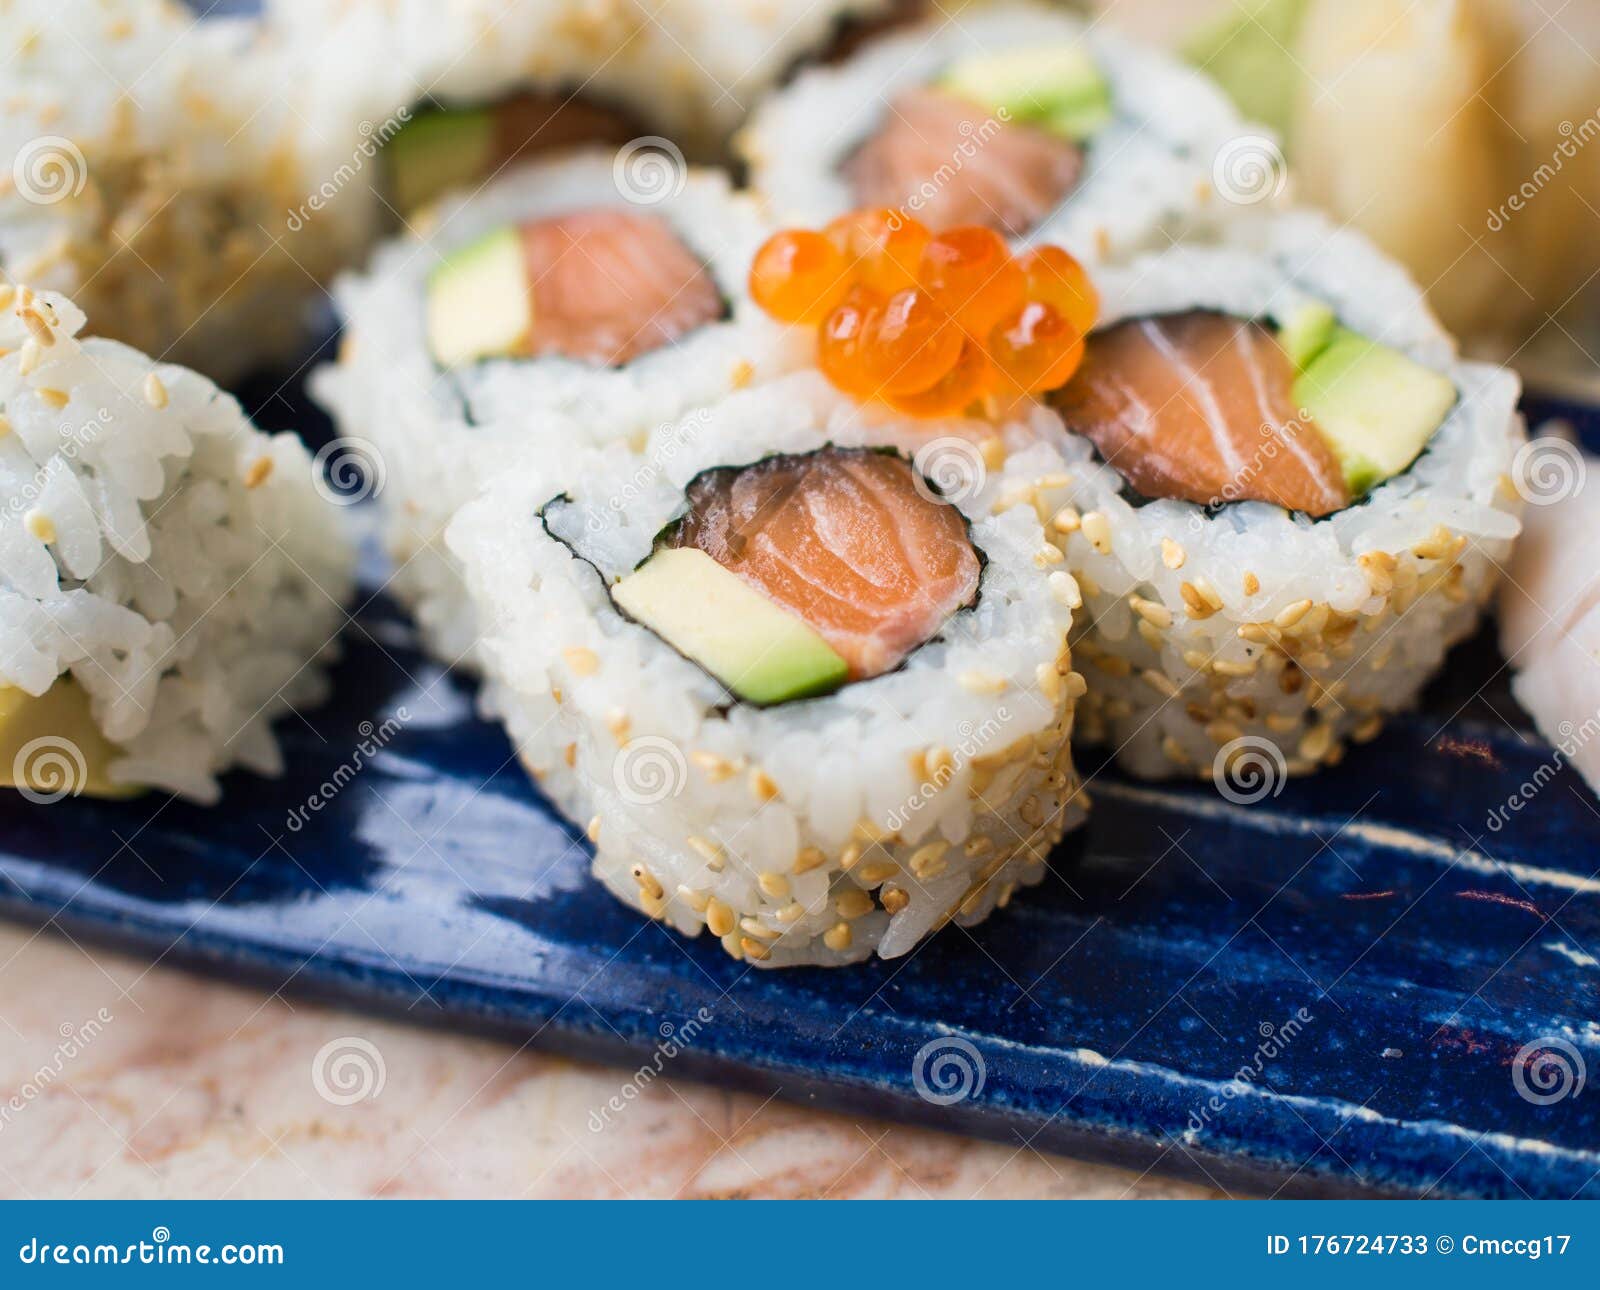 close up of uramaki sushi